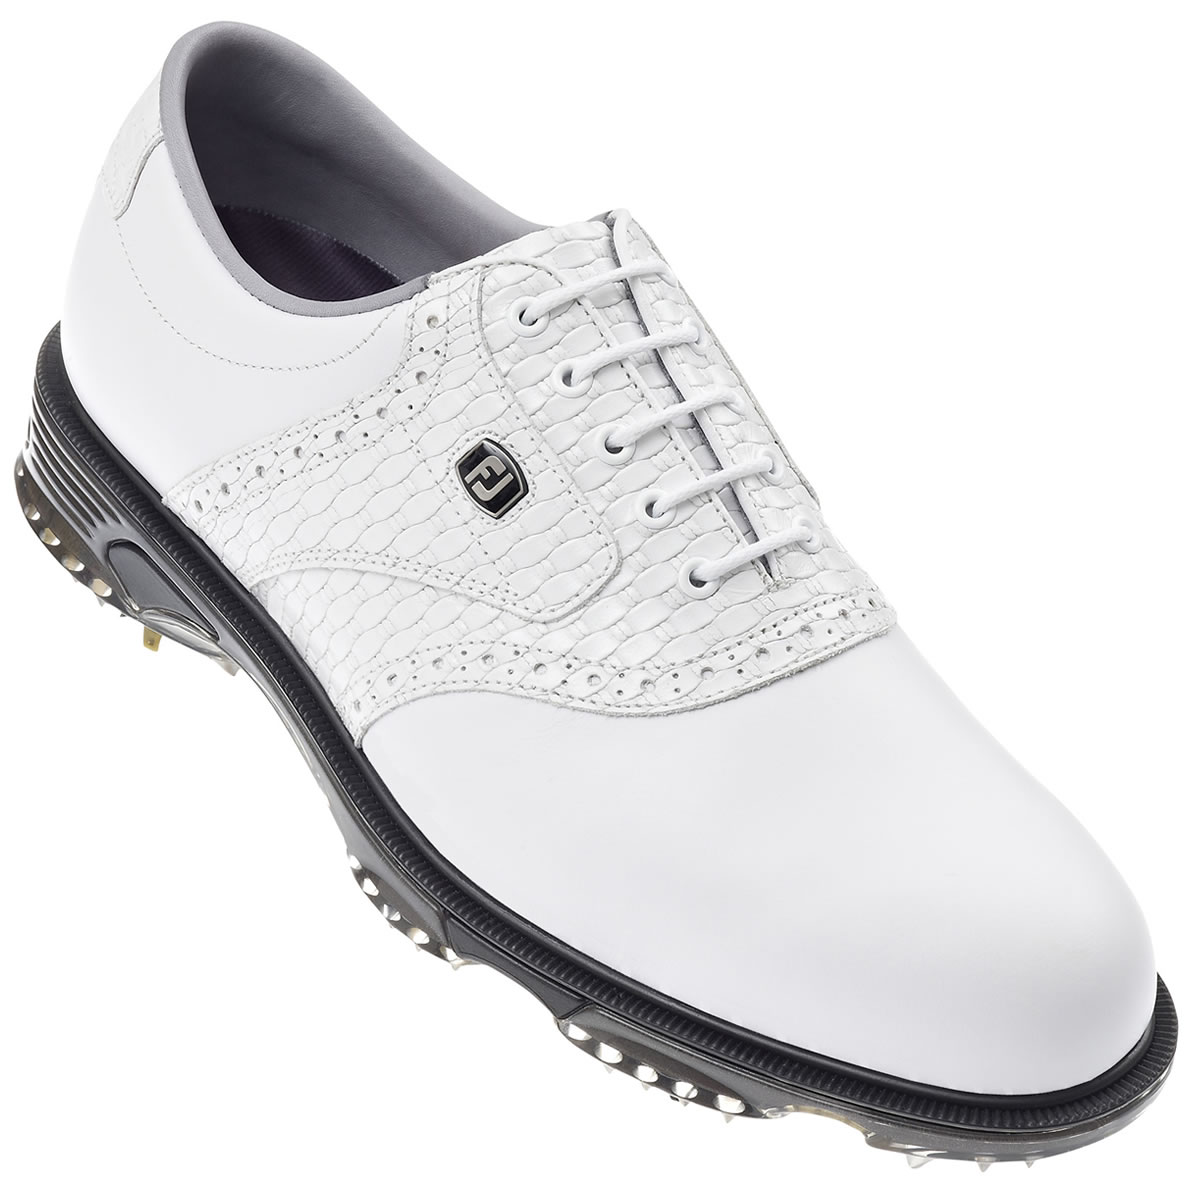 FootJoy DryJoys Tour Golf Shoes White #53794